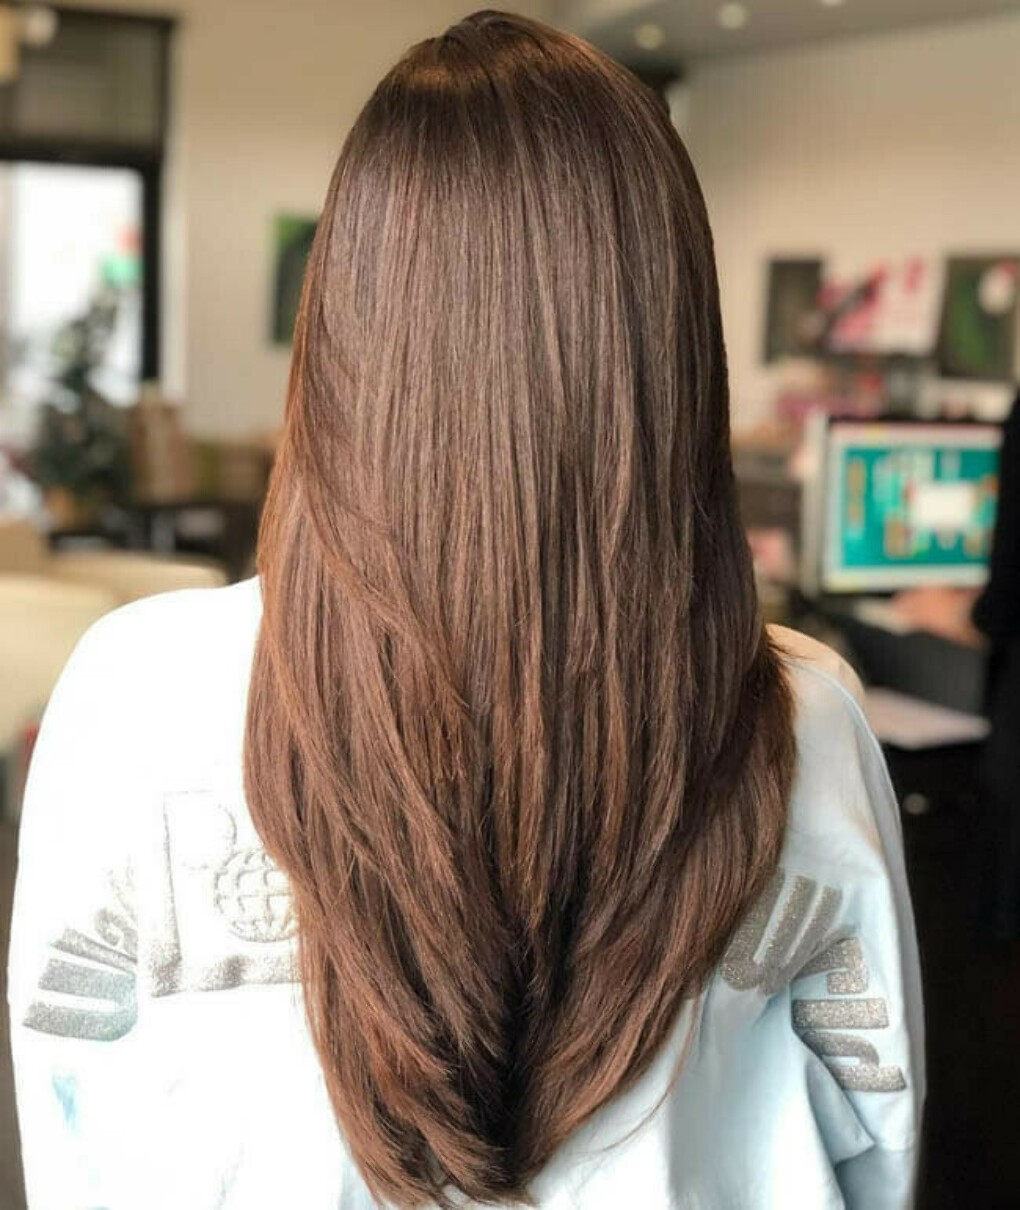 длинный волосы стрижка для девушки фото